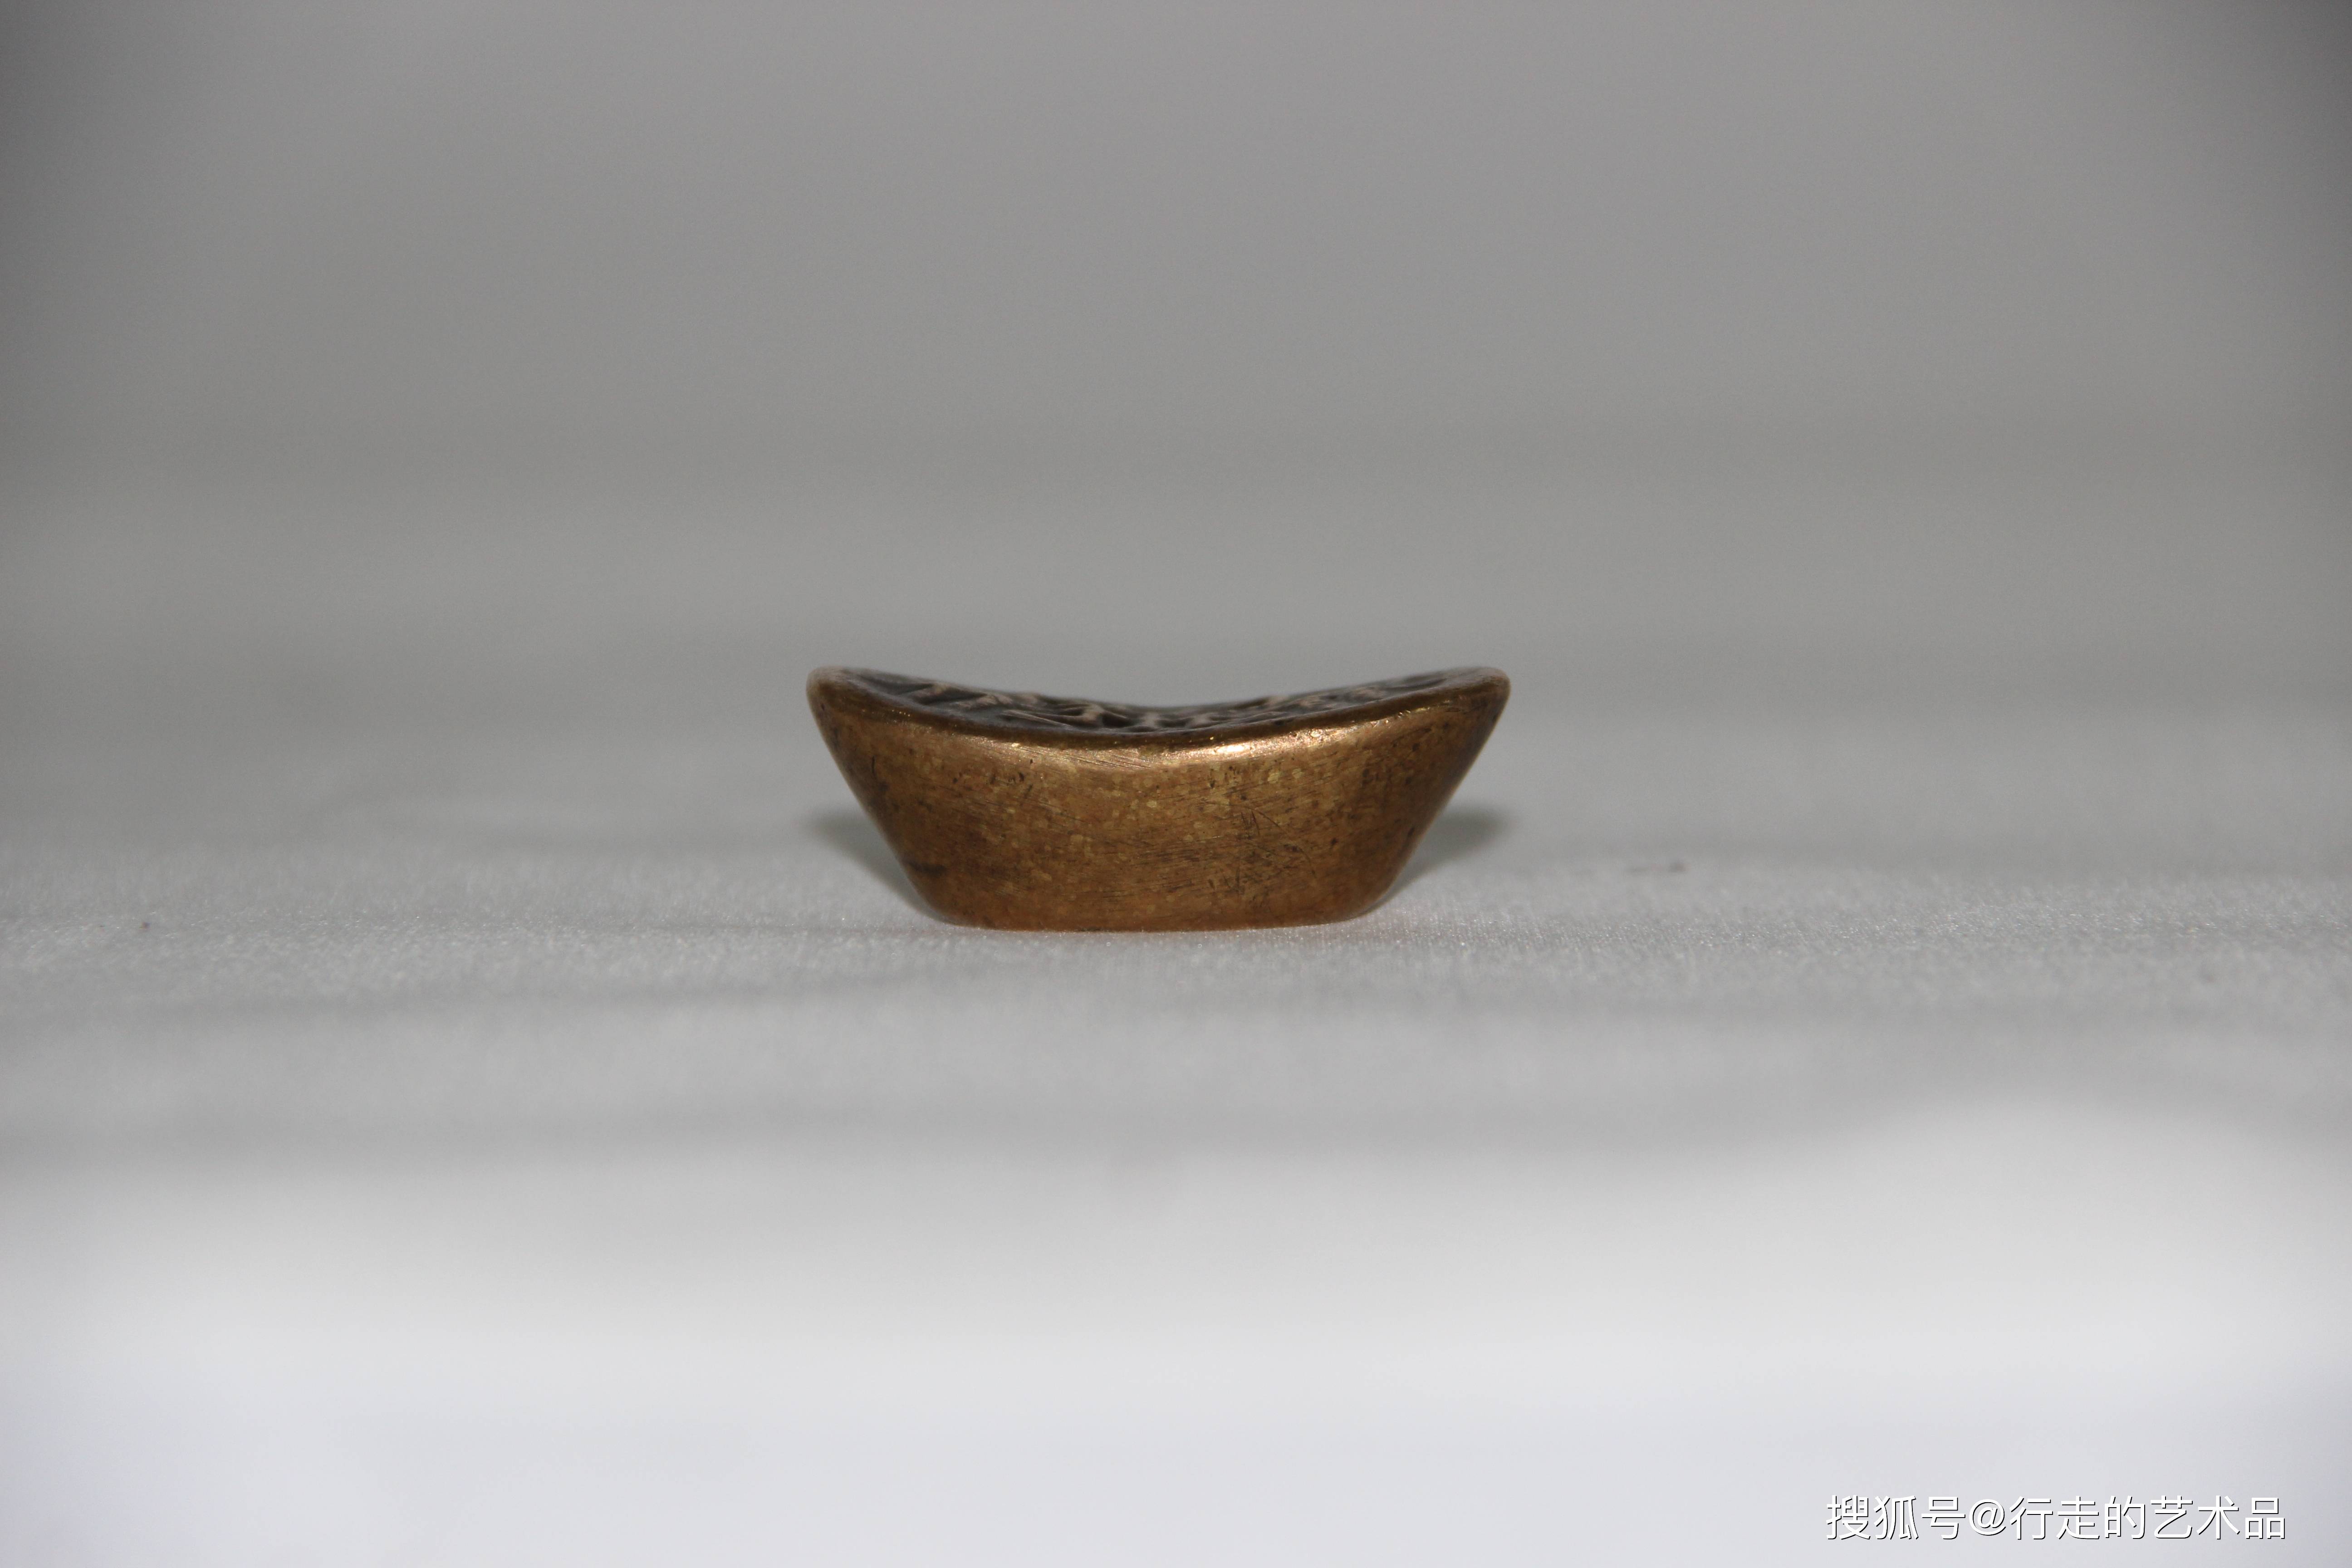 寿字金锭元宝,它是中国古代货币体系中的一个重要的组成部分,是古代